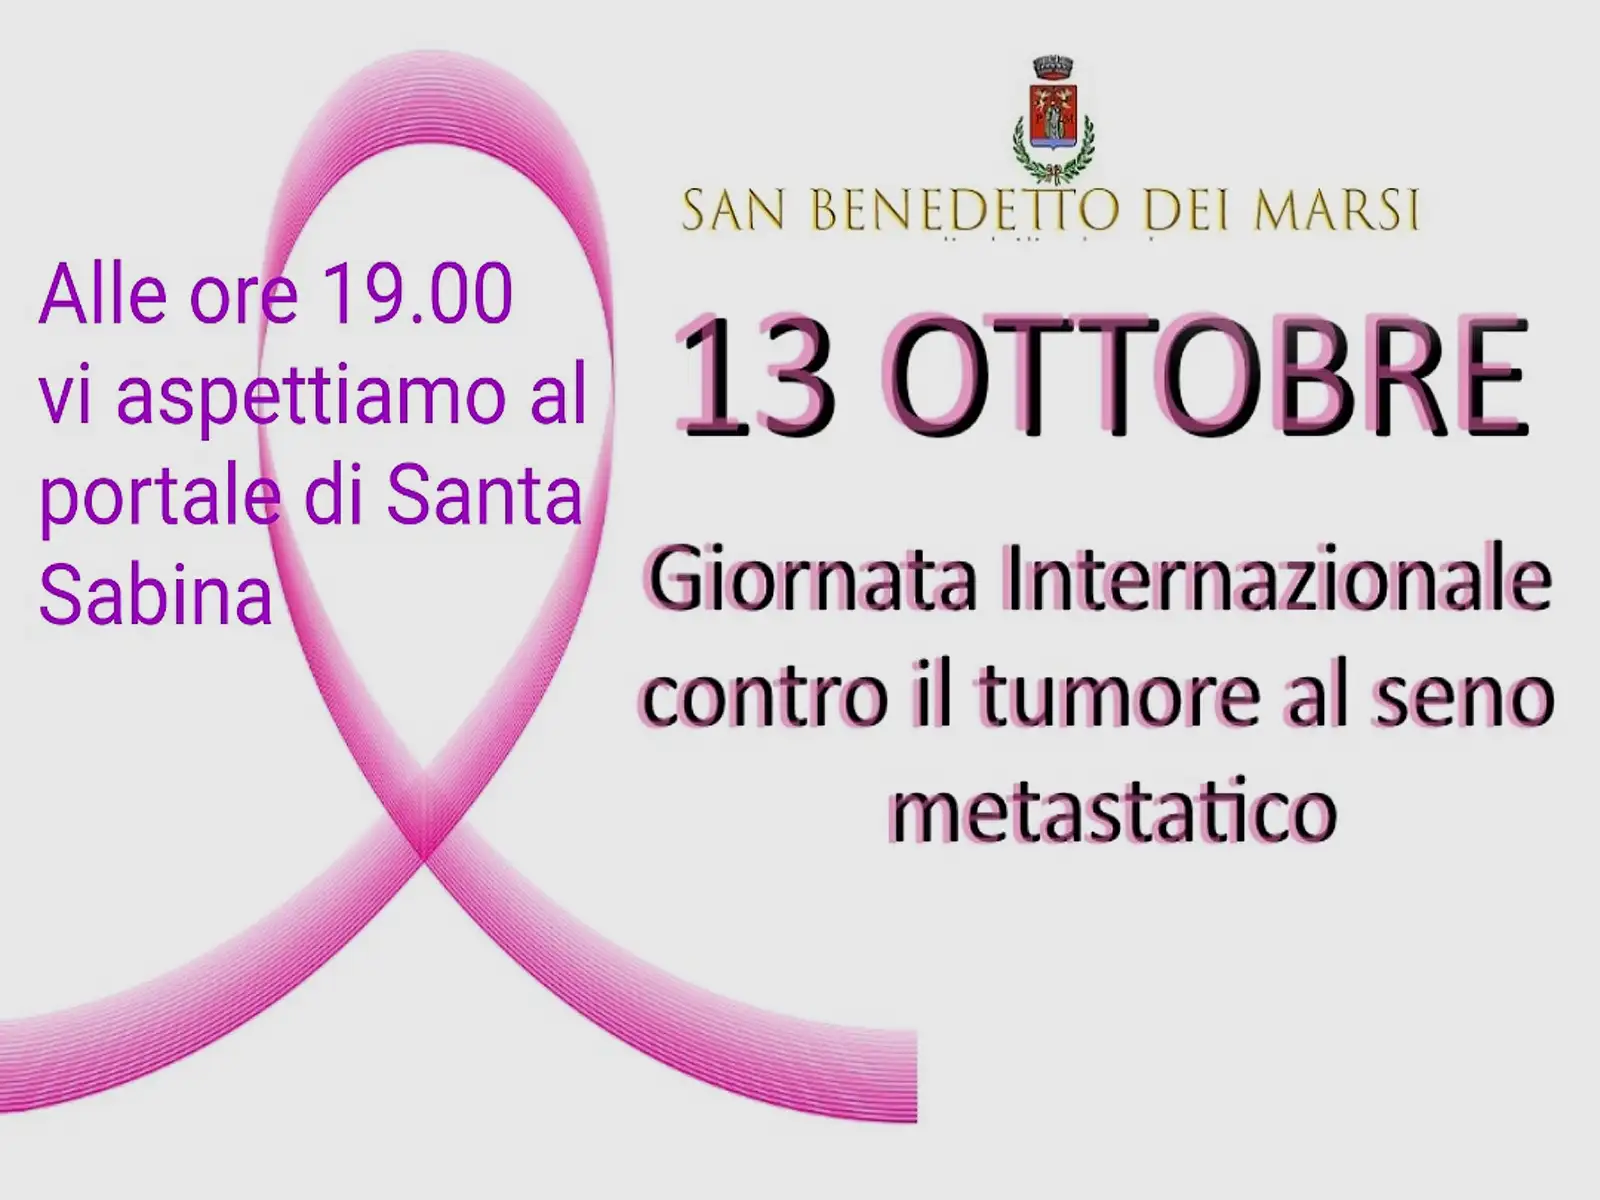 Giornata nazionale contro il tumore al seno metastatico